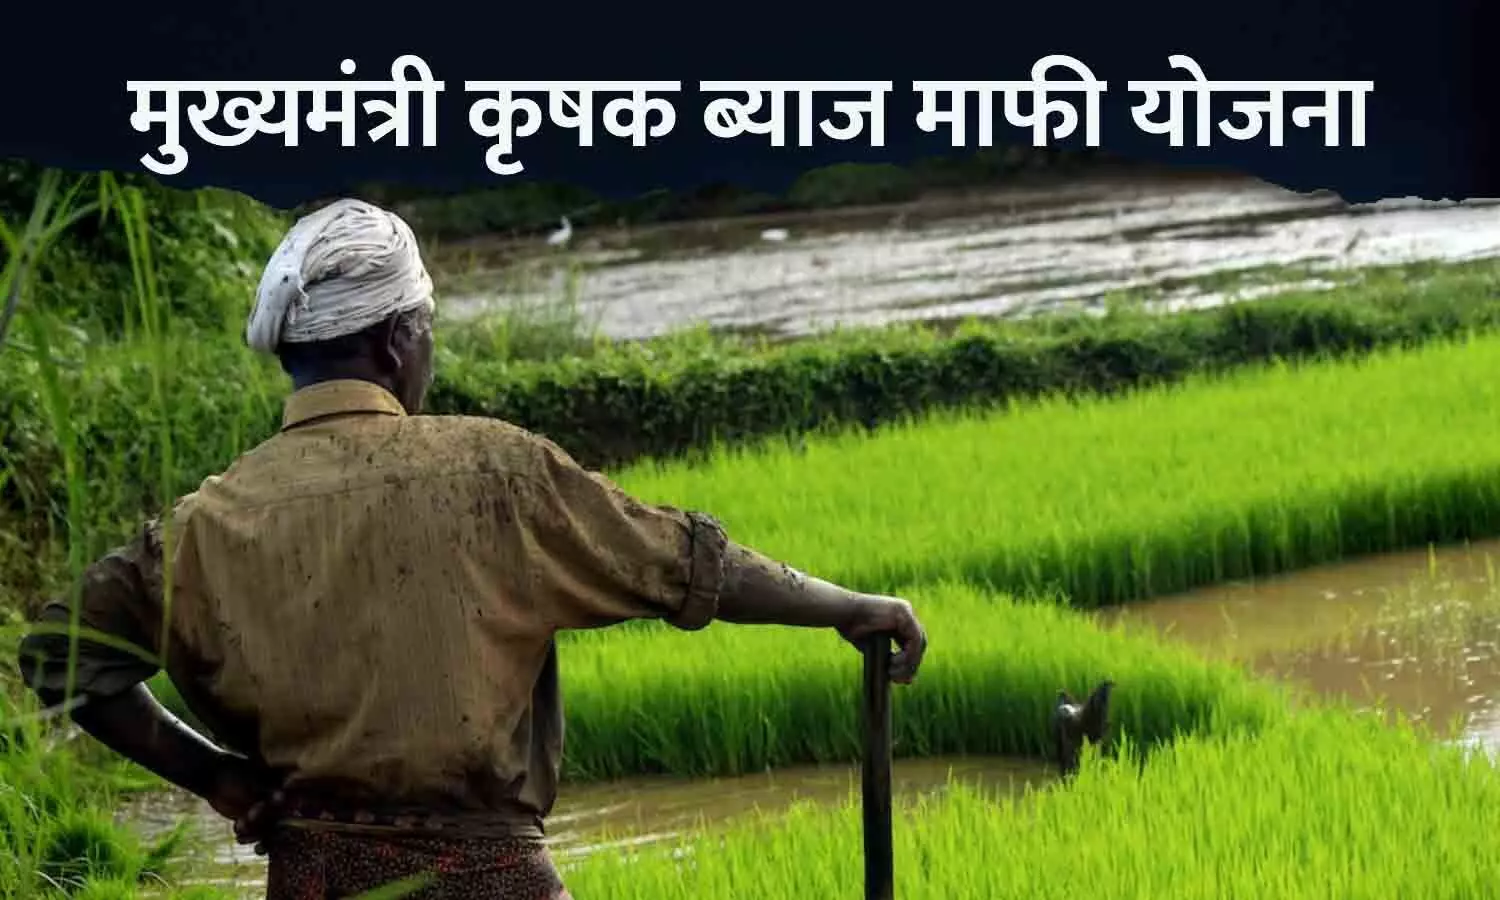 मुख्यमंत्री कृषक ब्याज माफी योजना: रीवा में 25 हजार से अधिक किसानों के ऋण का ब्याज माफ होगा, समितियों को भी मिलेगी संजीवनी